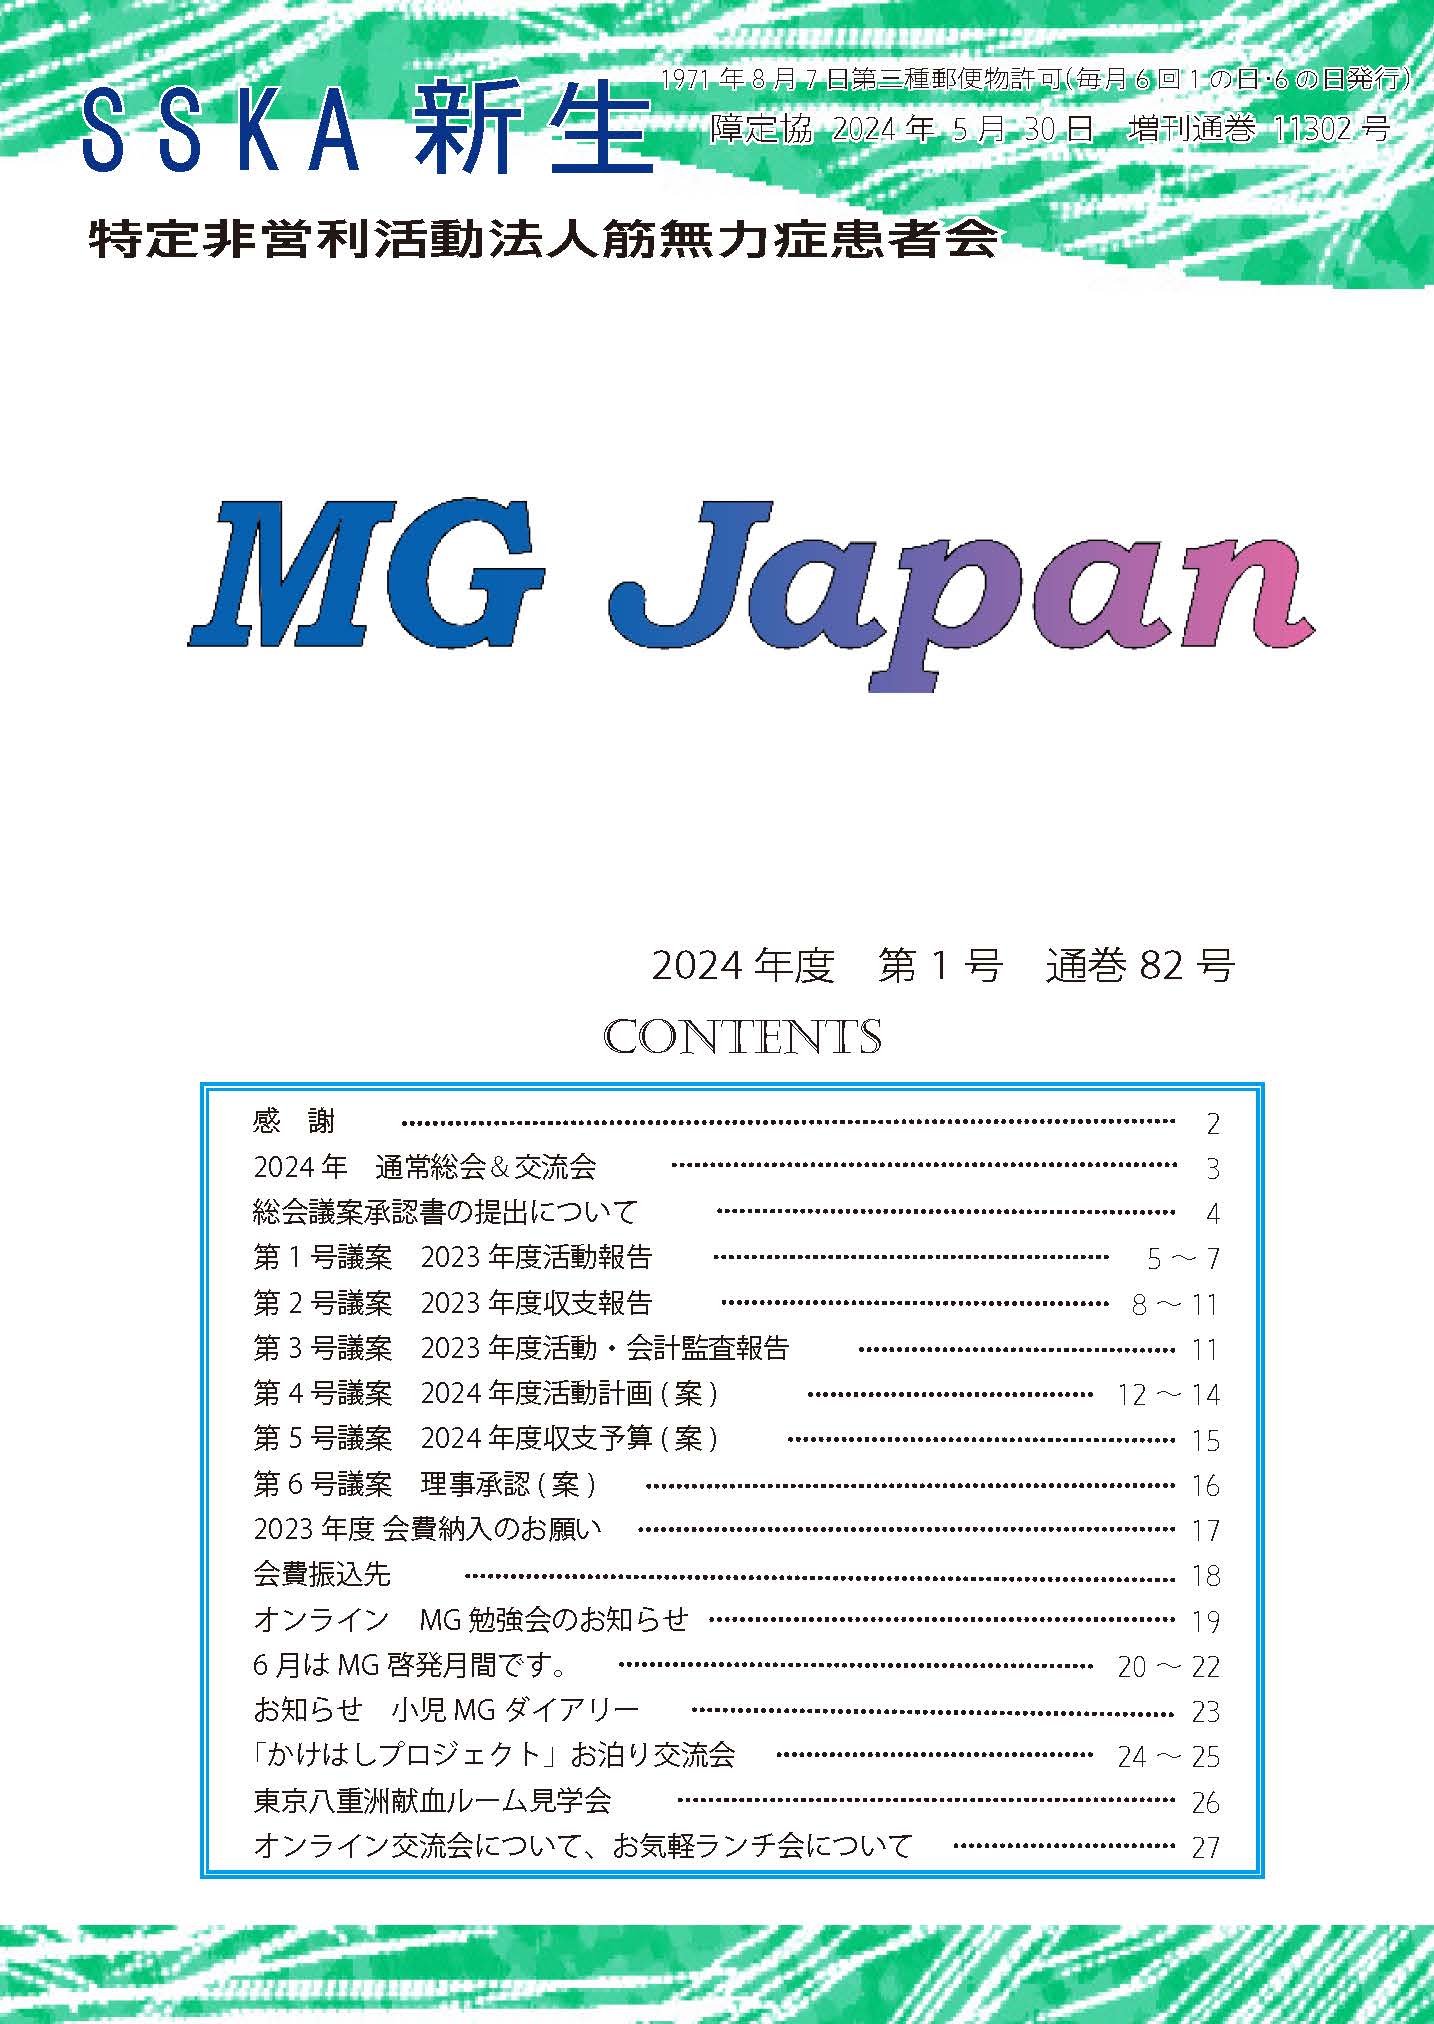 会報「MG Japan82号」